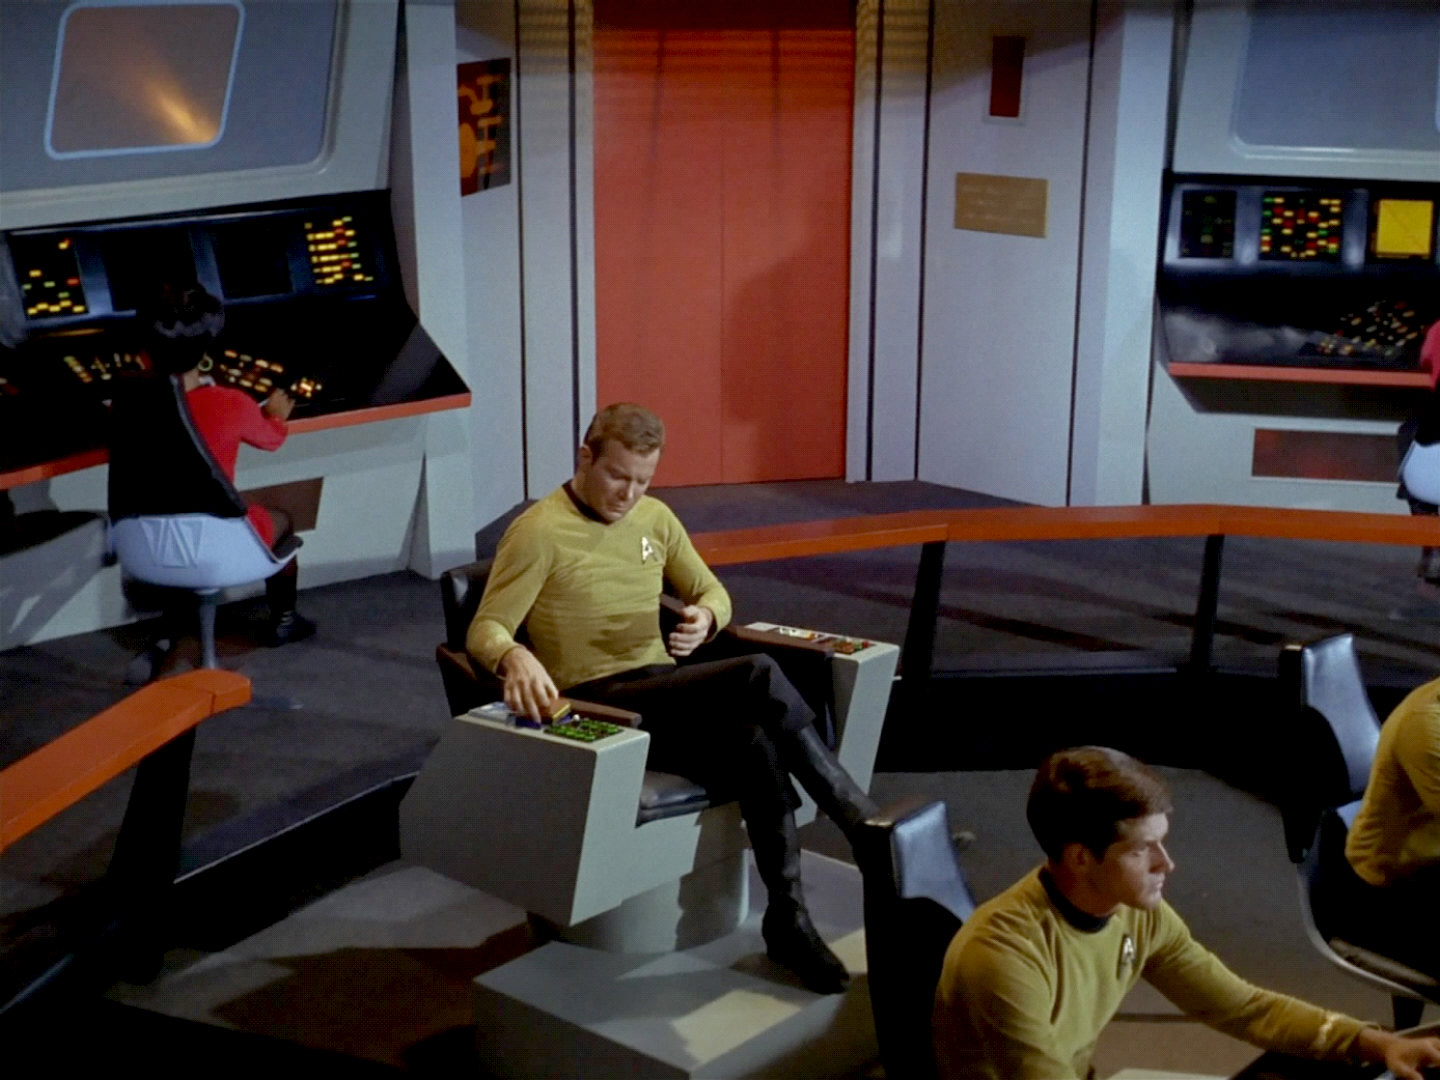 Star Trek Captain's Pool Chair